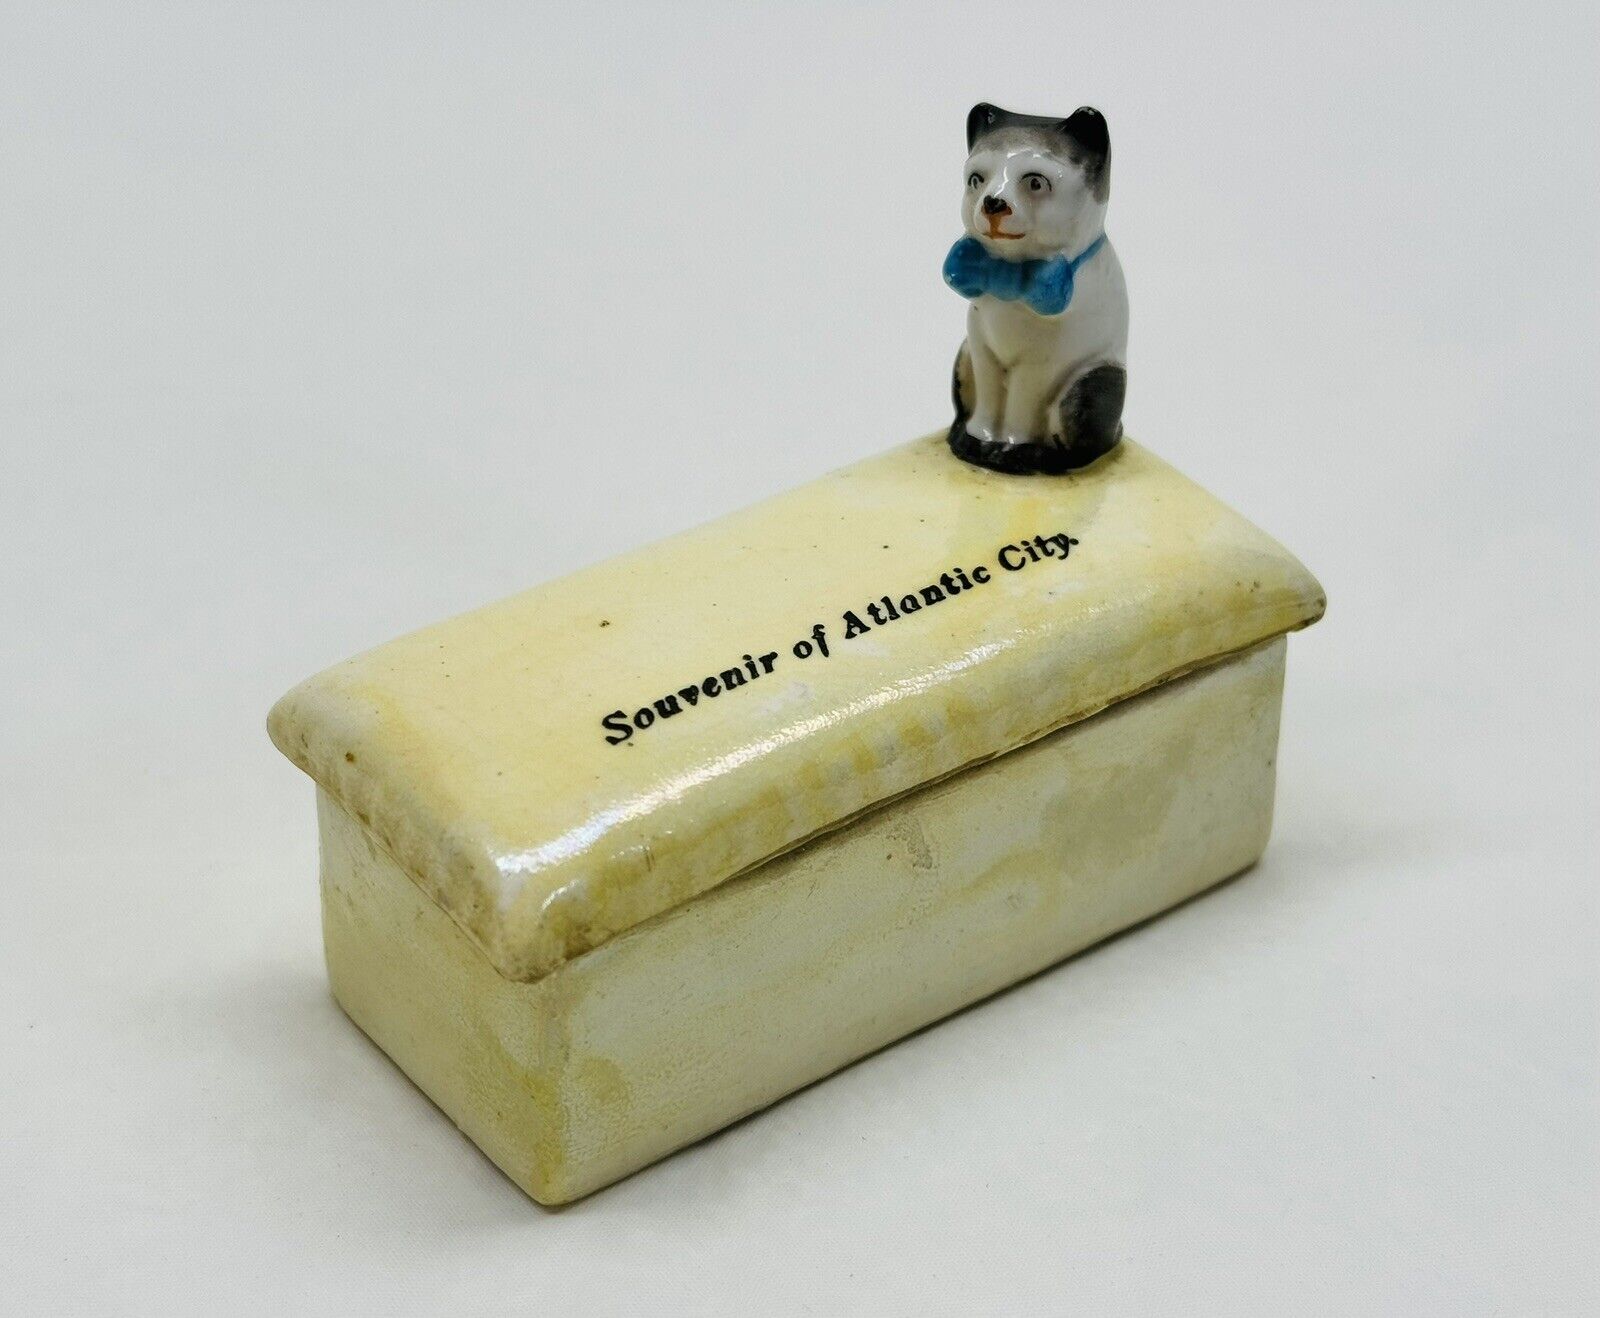 Vintage German Souvenir Atlantic City Ceramic Trinket Box Cat Figurine Porcelain